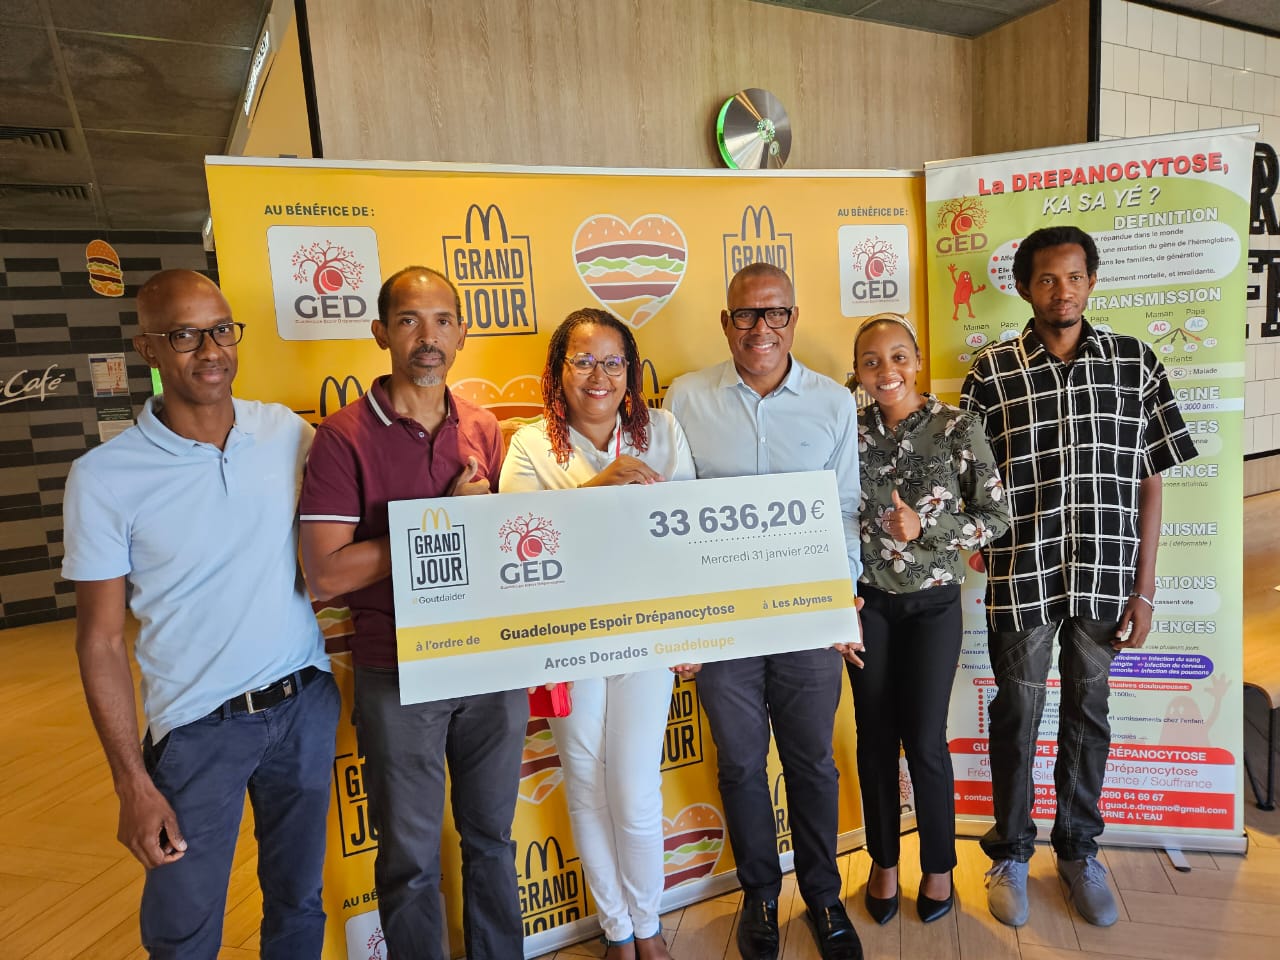     Plus de 30 000 € pour l’association Guadeloupe Espoir Drépanocytose

